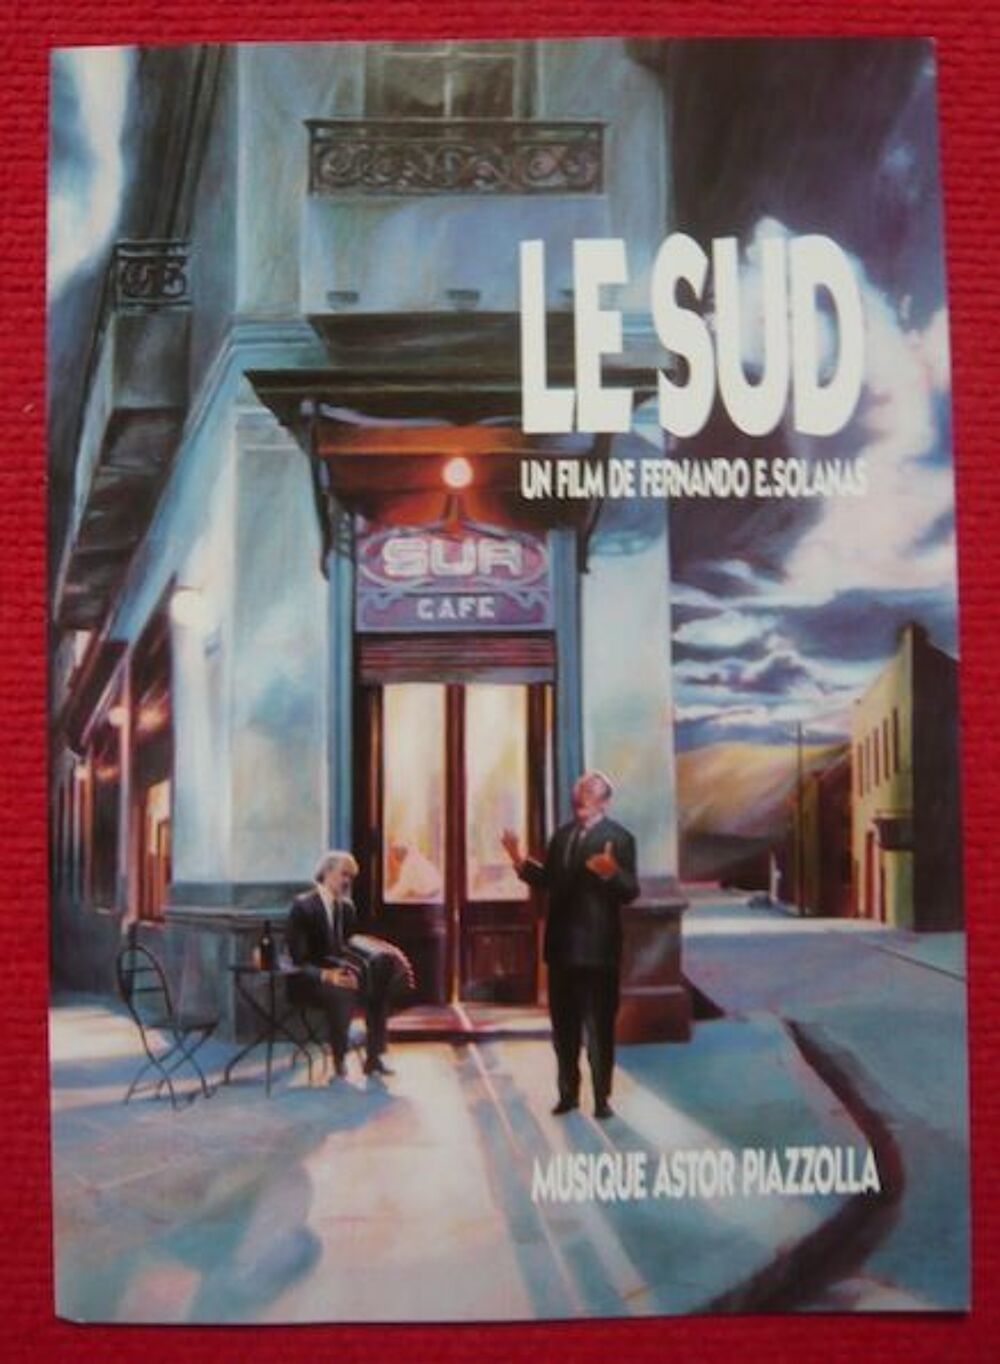 Affichette du film Le Sud (1988) 